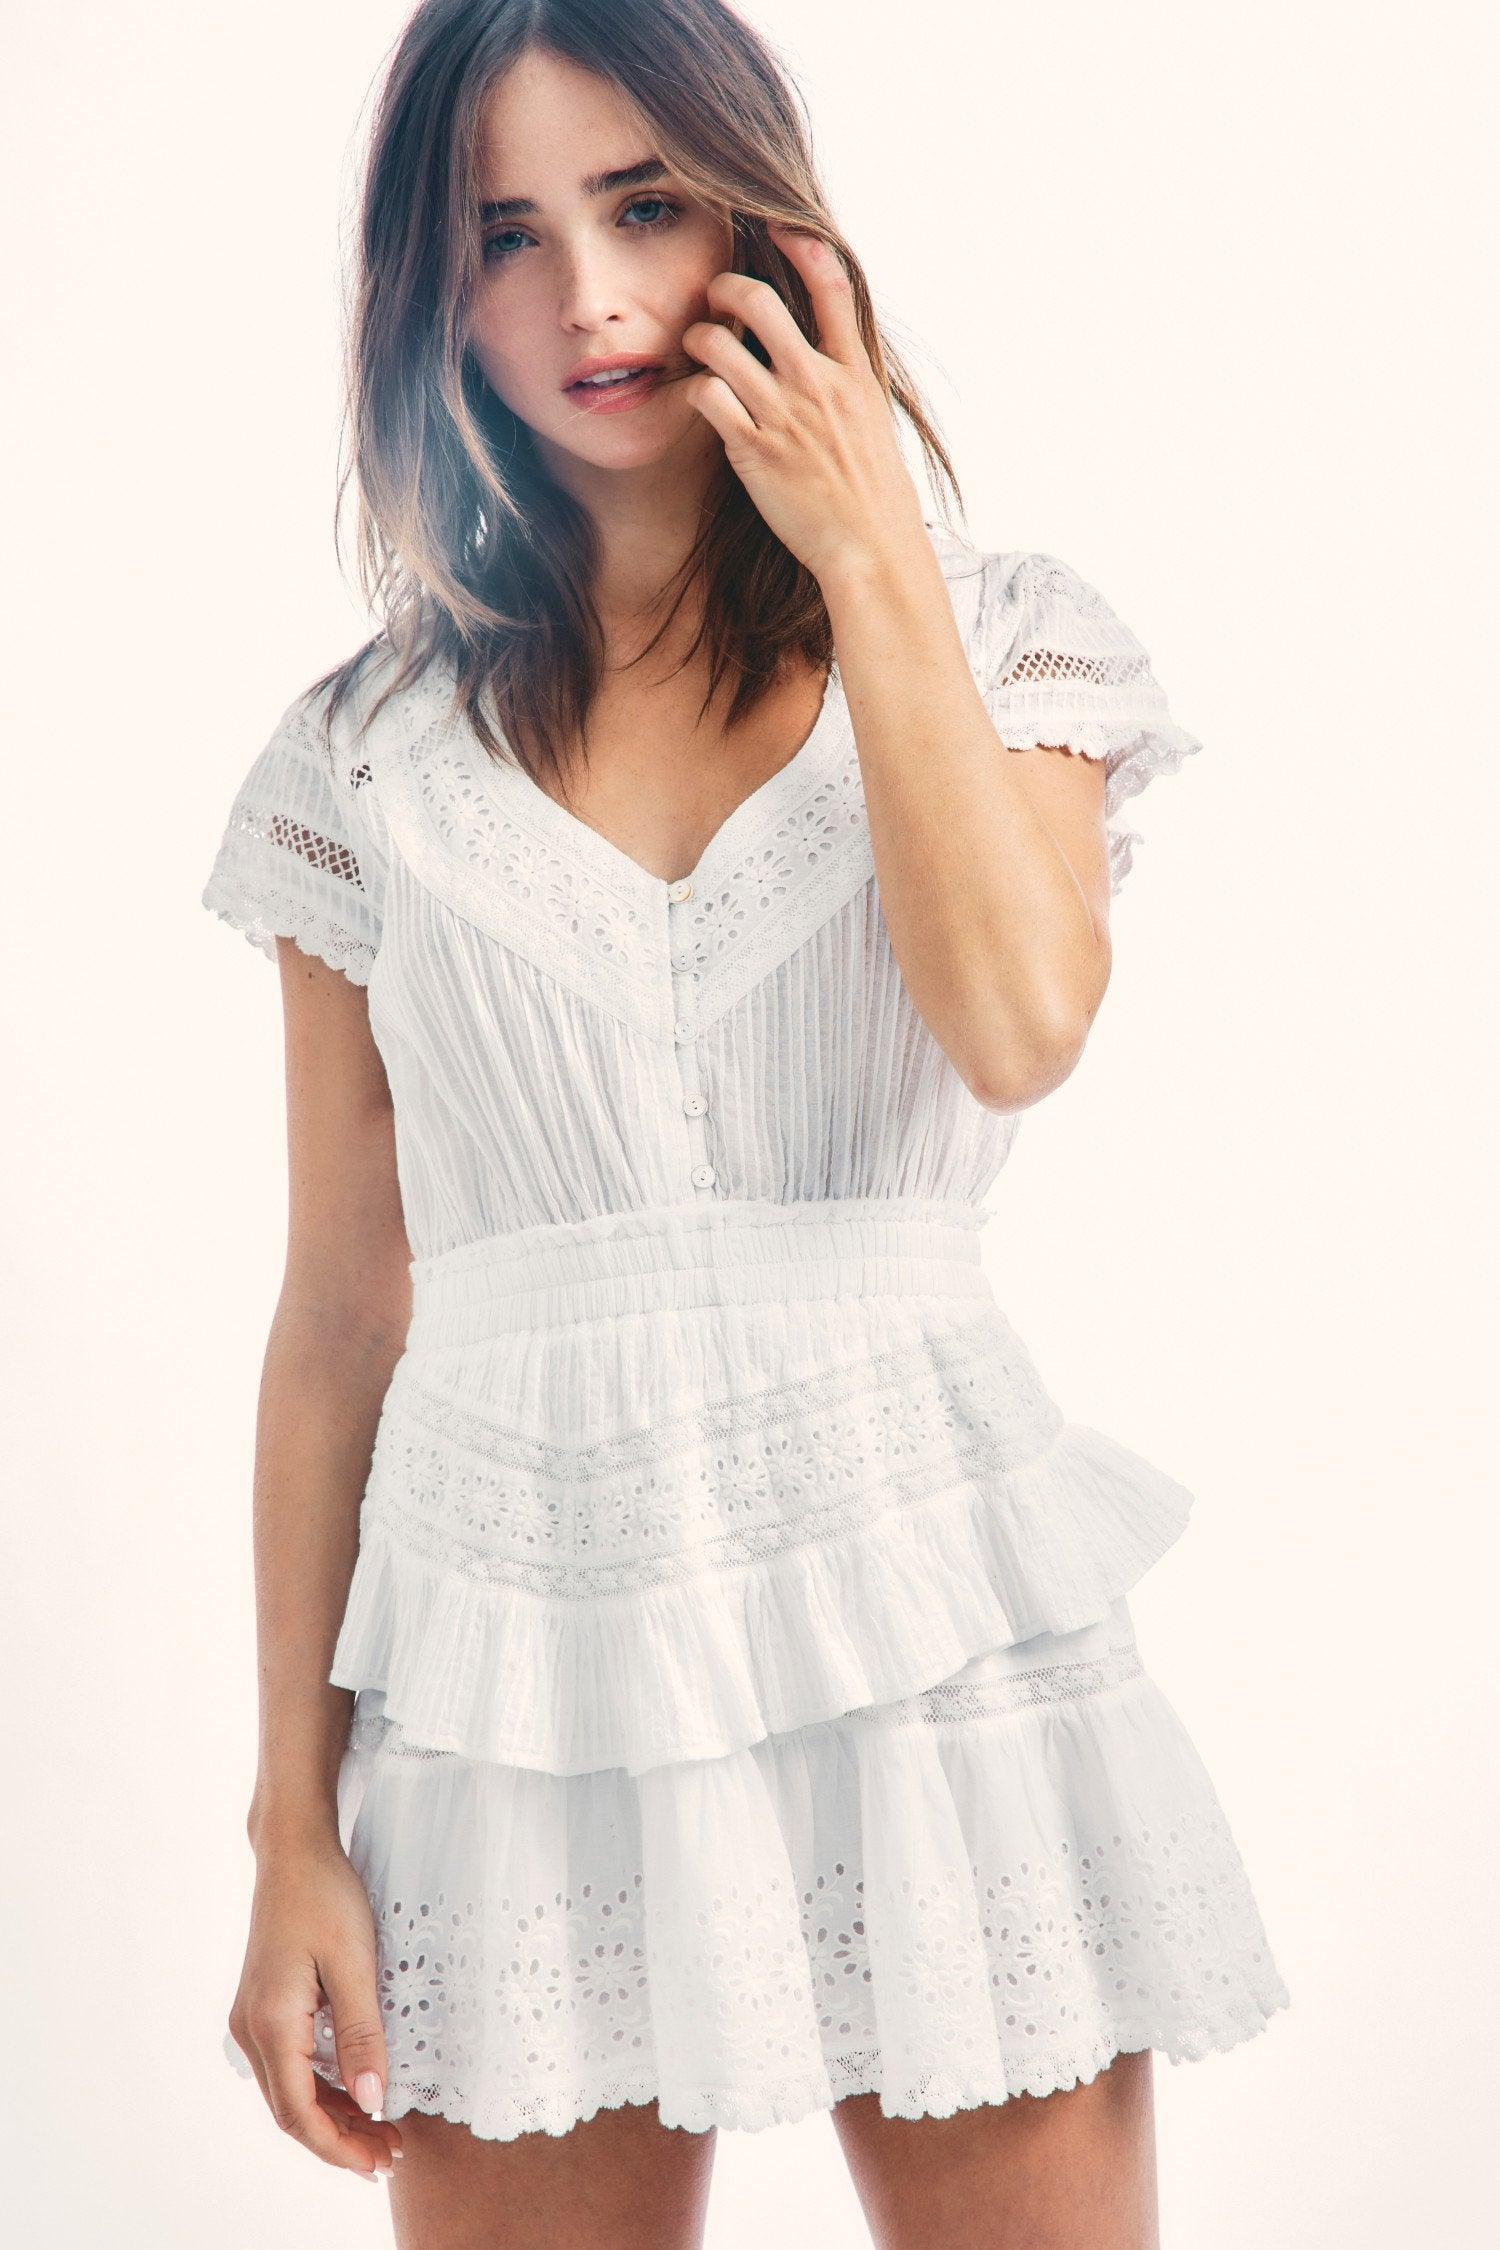 LoveShackFancy - Jeromie Cotton Broderie Mini Dress in White - OutDazl